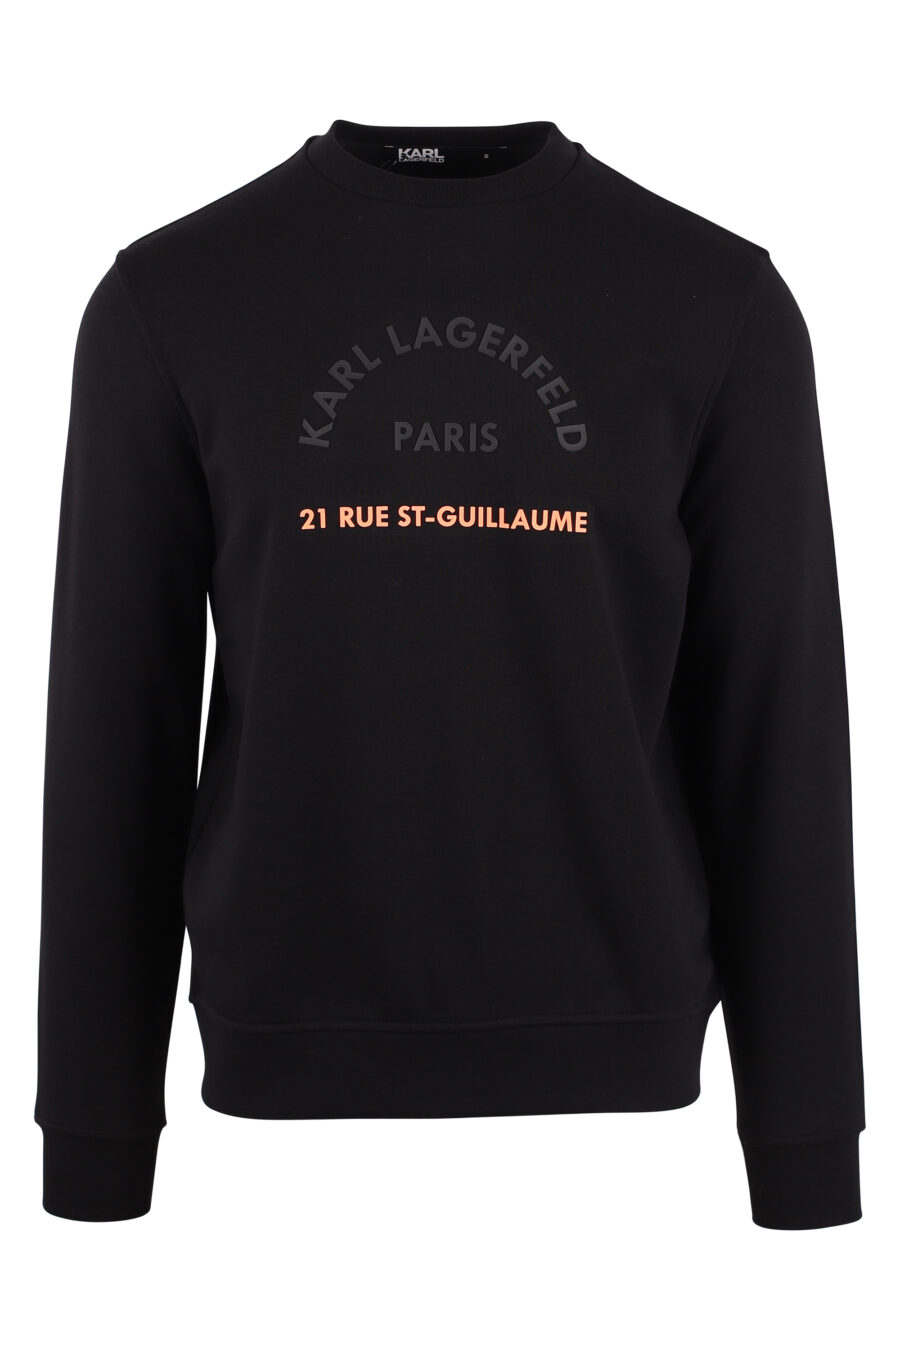 Black sweatshirt with orange "rue st guillaume" maxilogo - IMG 9430